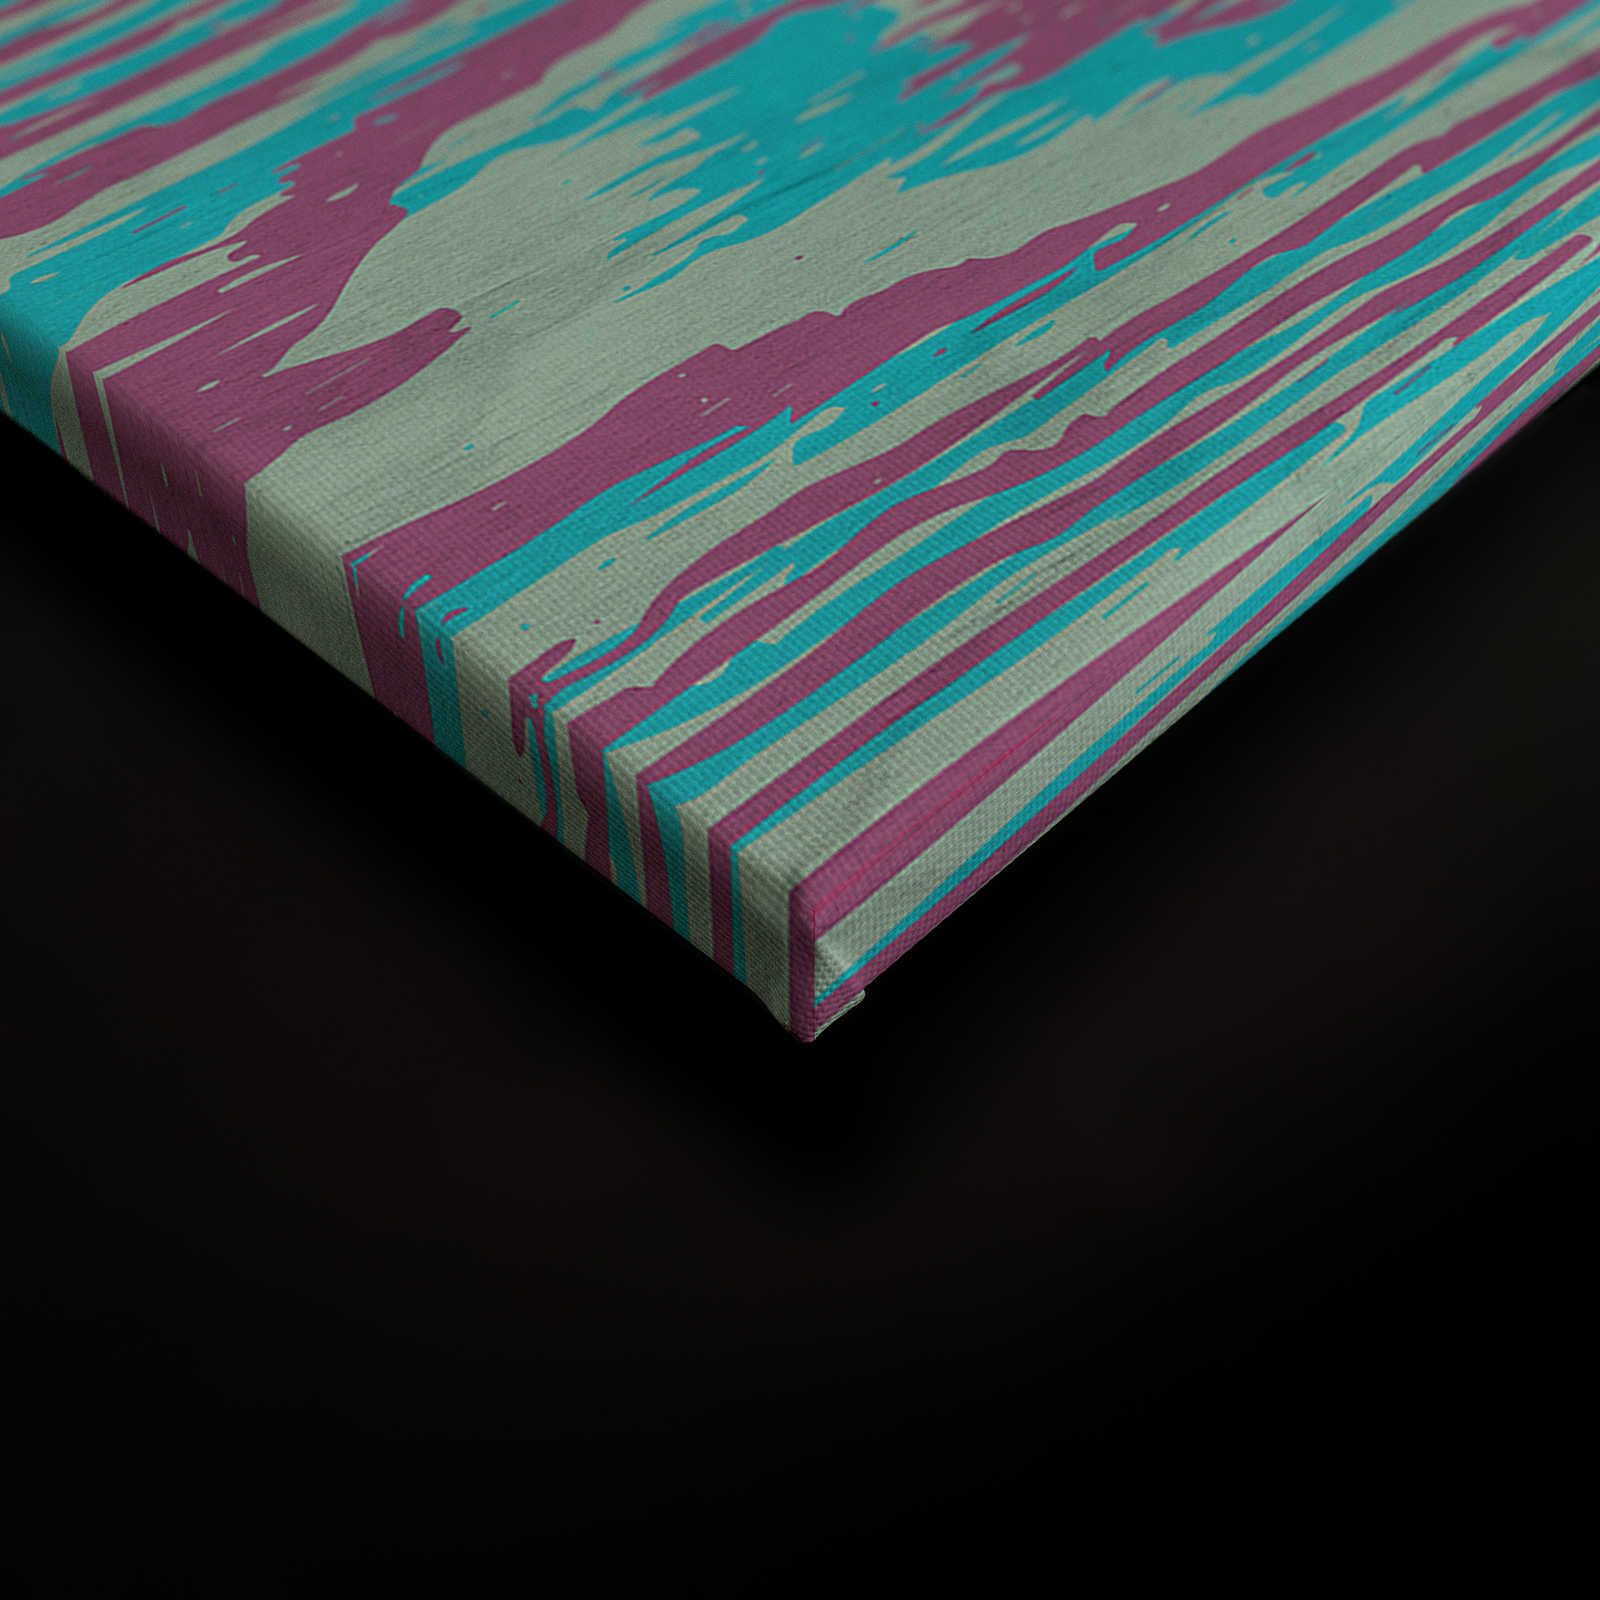             Bounty 2 - Quadro su tela Petrol & Purple con design effetto legno - 0,90 m x 0,60 m
        